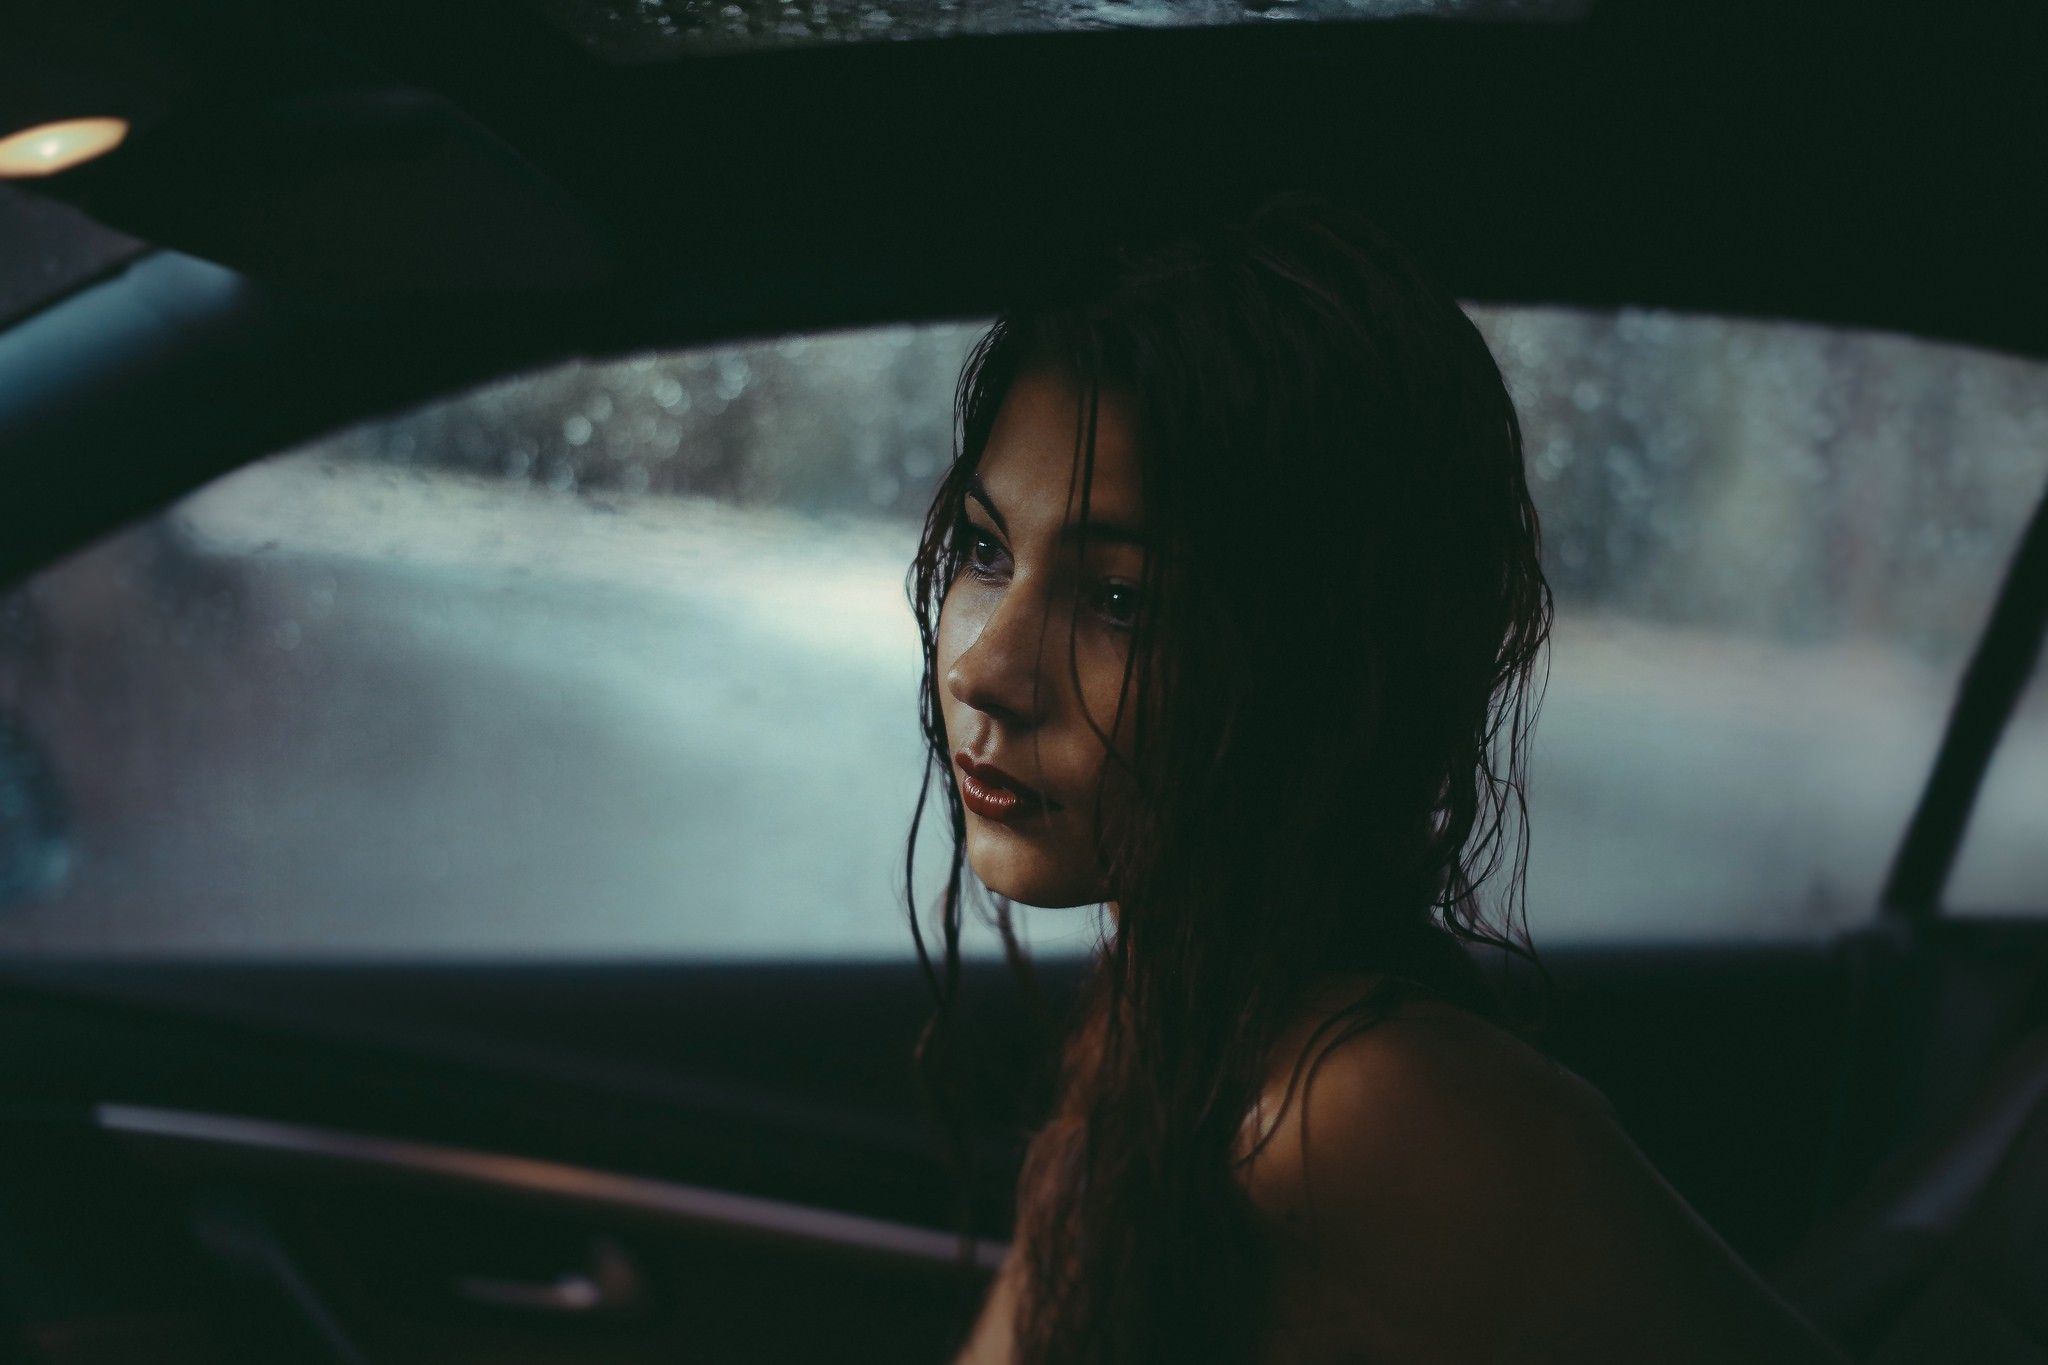 Wallpaper, women, looking away, brunette, rain, lipstick, wet hair, driving, darkness, screenshot 2048x1365